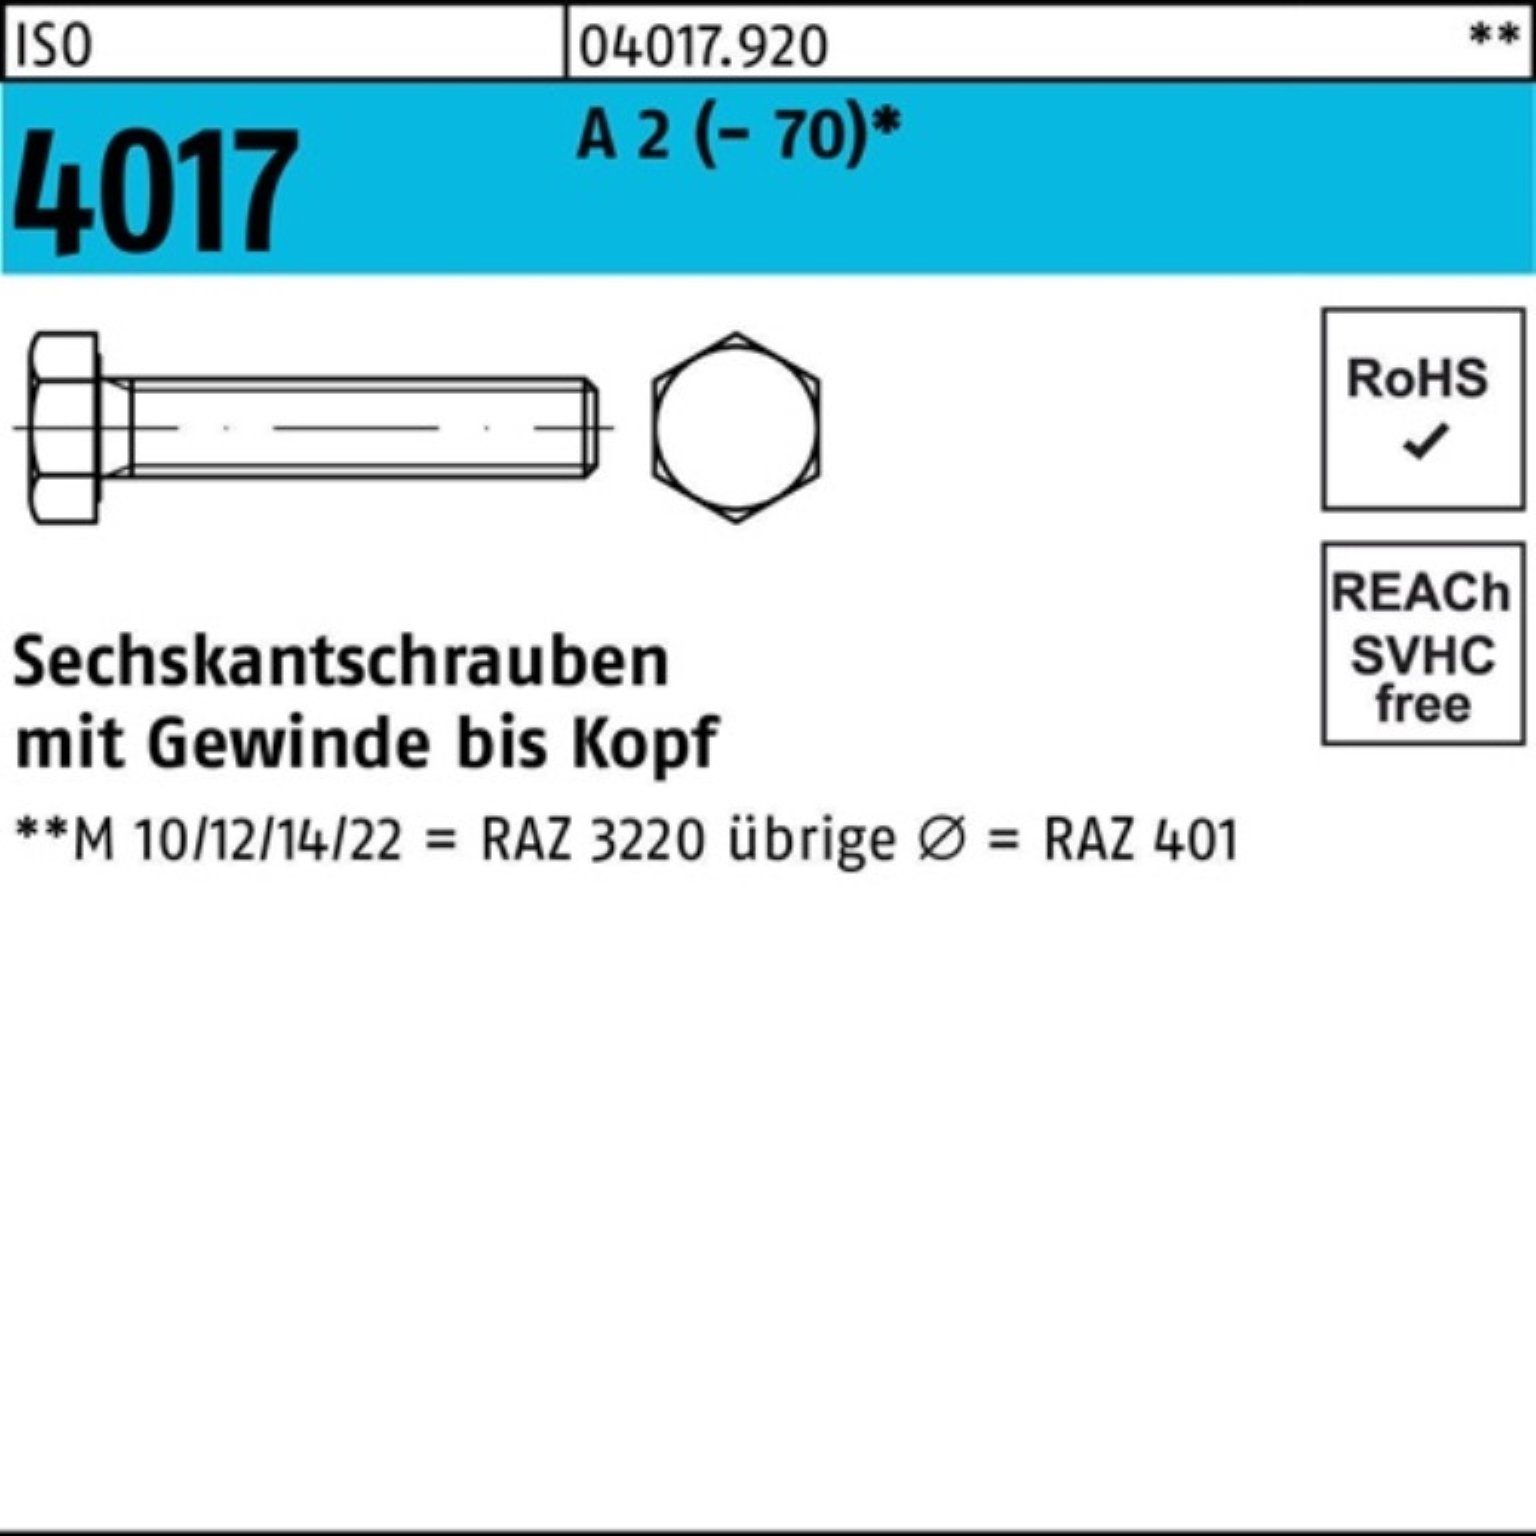 Bufab Sechskantschraube 100er Pack Sechskantschraube ISO 4017 VG M8x 170 A 2 (70) 50 Stück